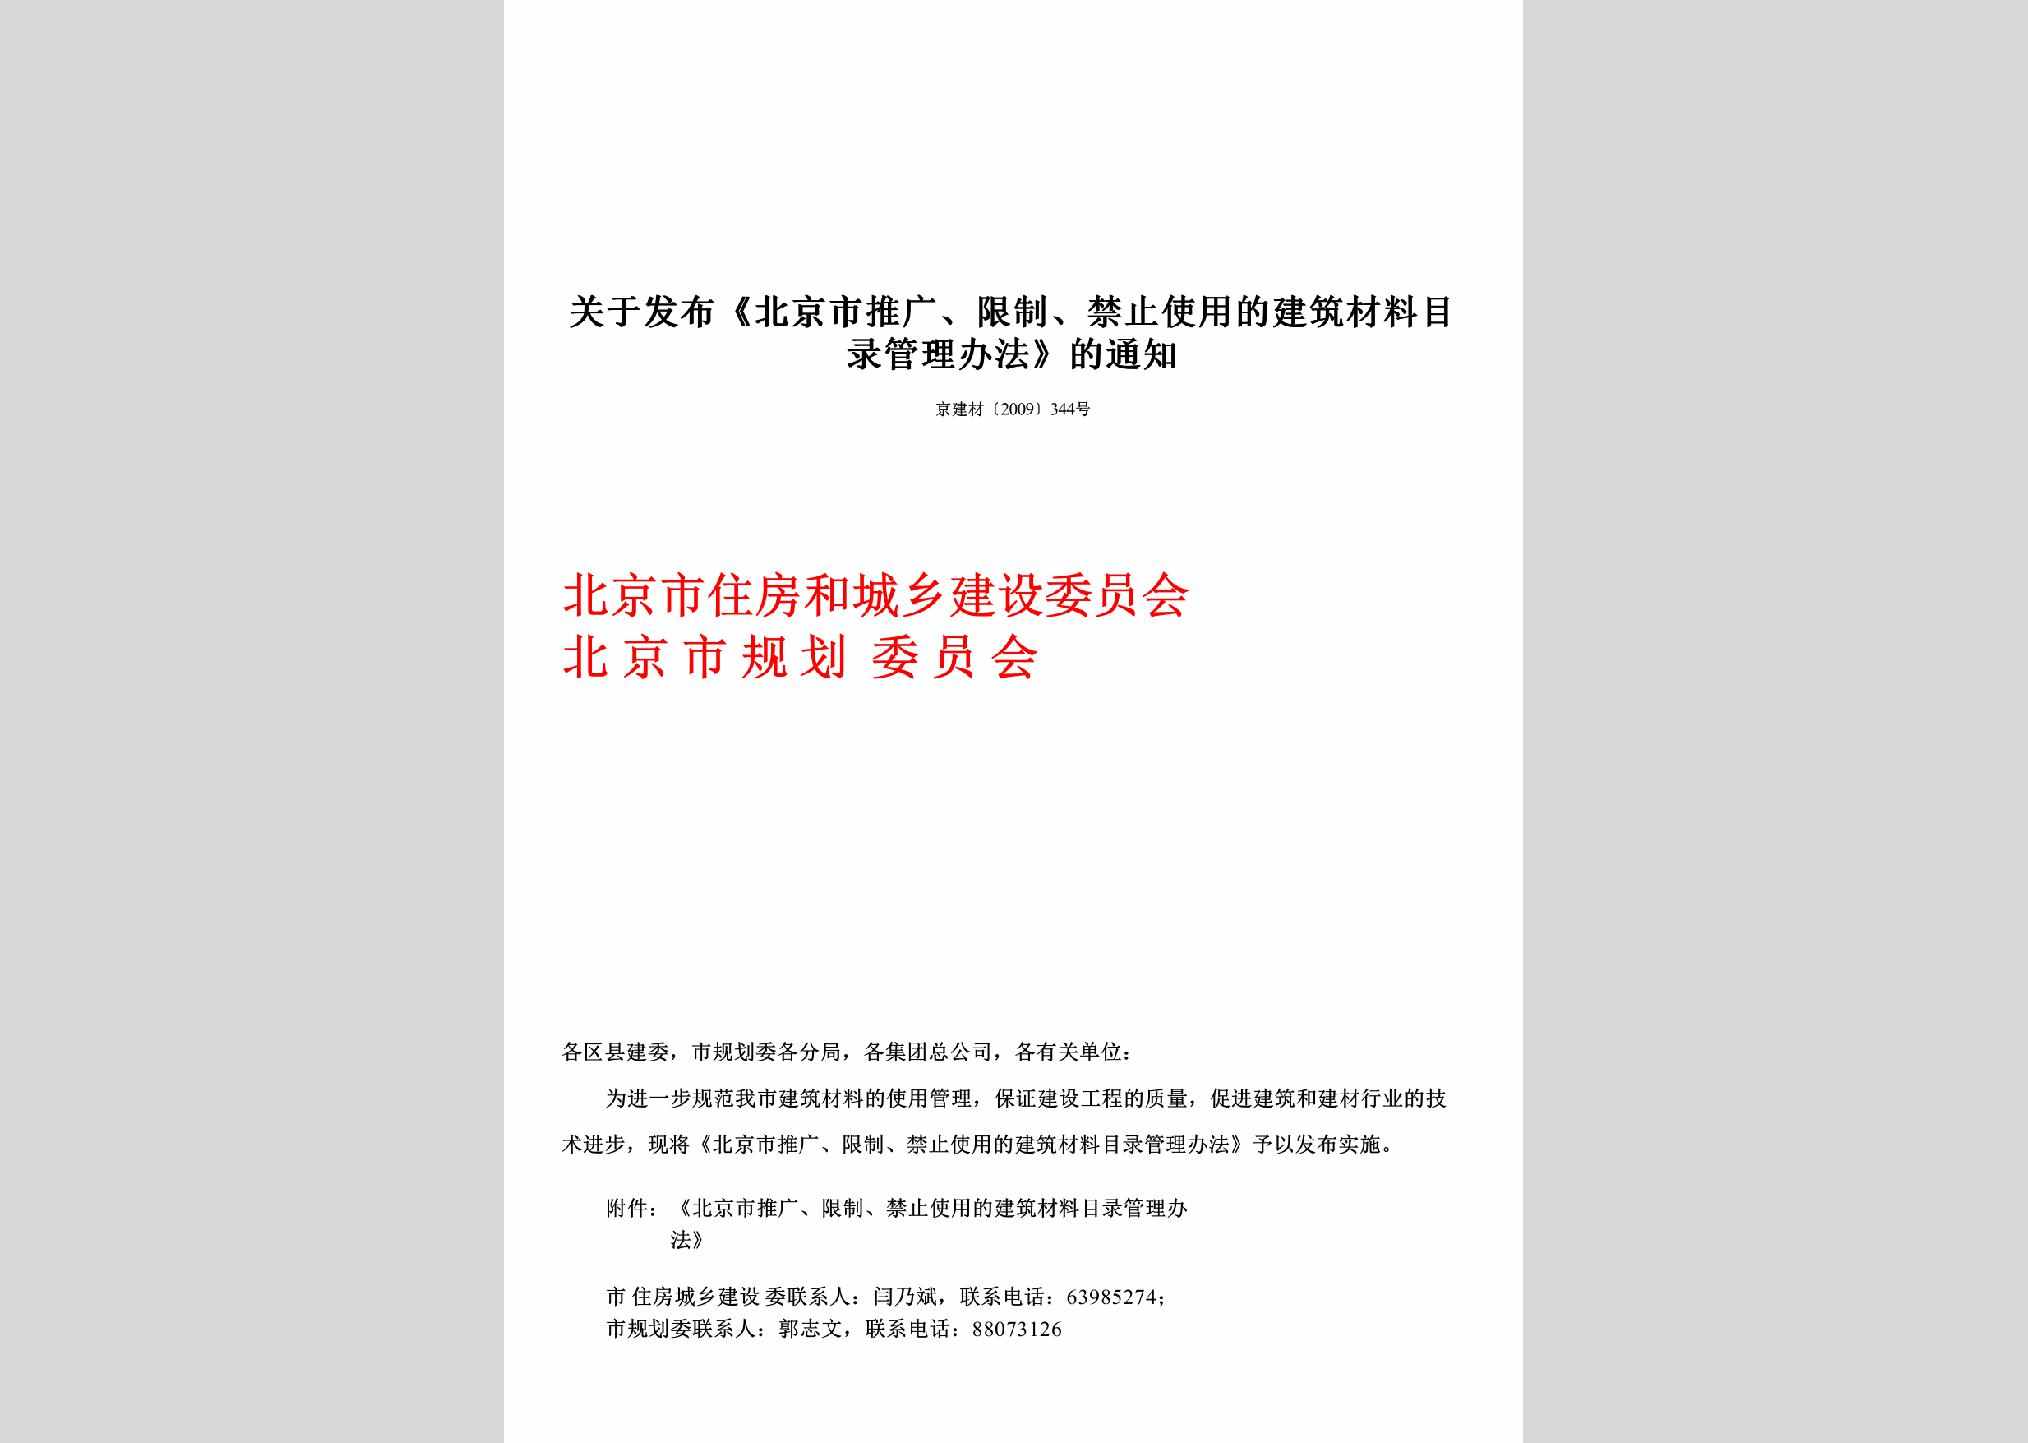 京建材[2009]344号：关于发布《北京市推广、限制、禁止使用的建筑材料目录管理办法》的通知